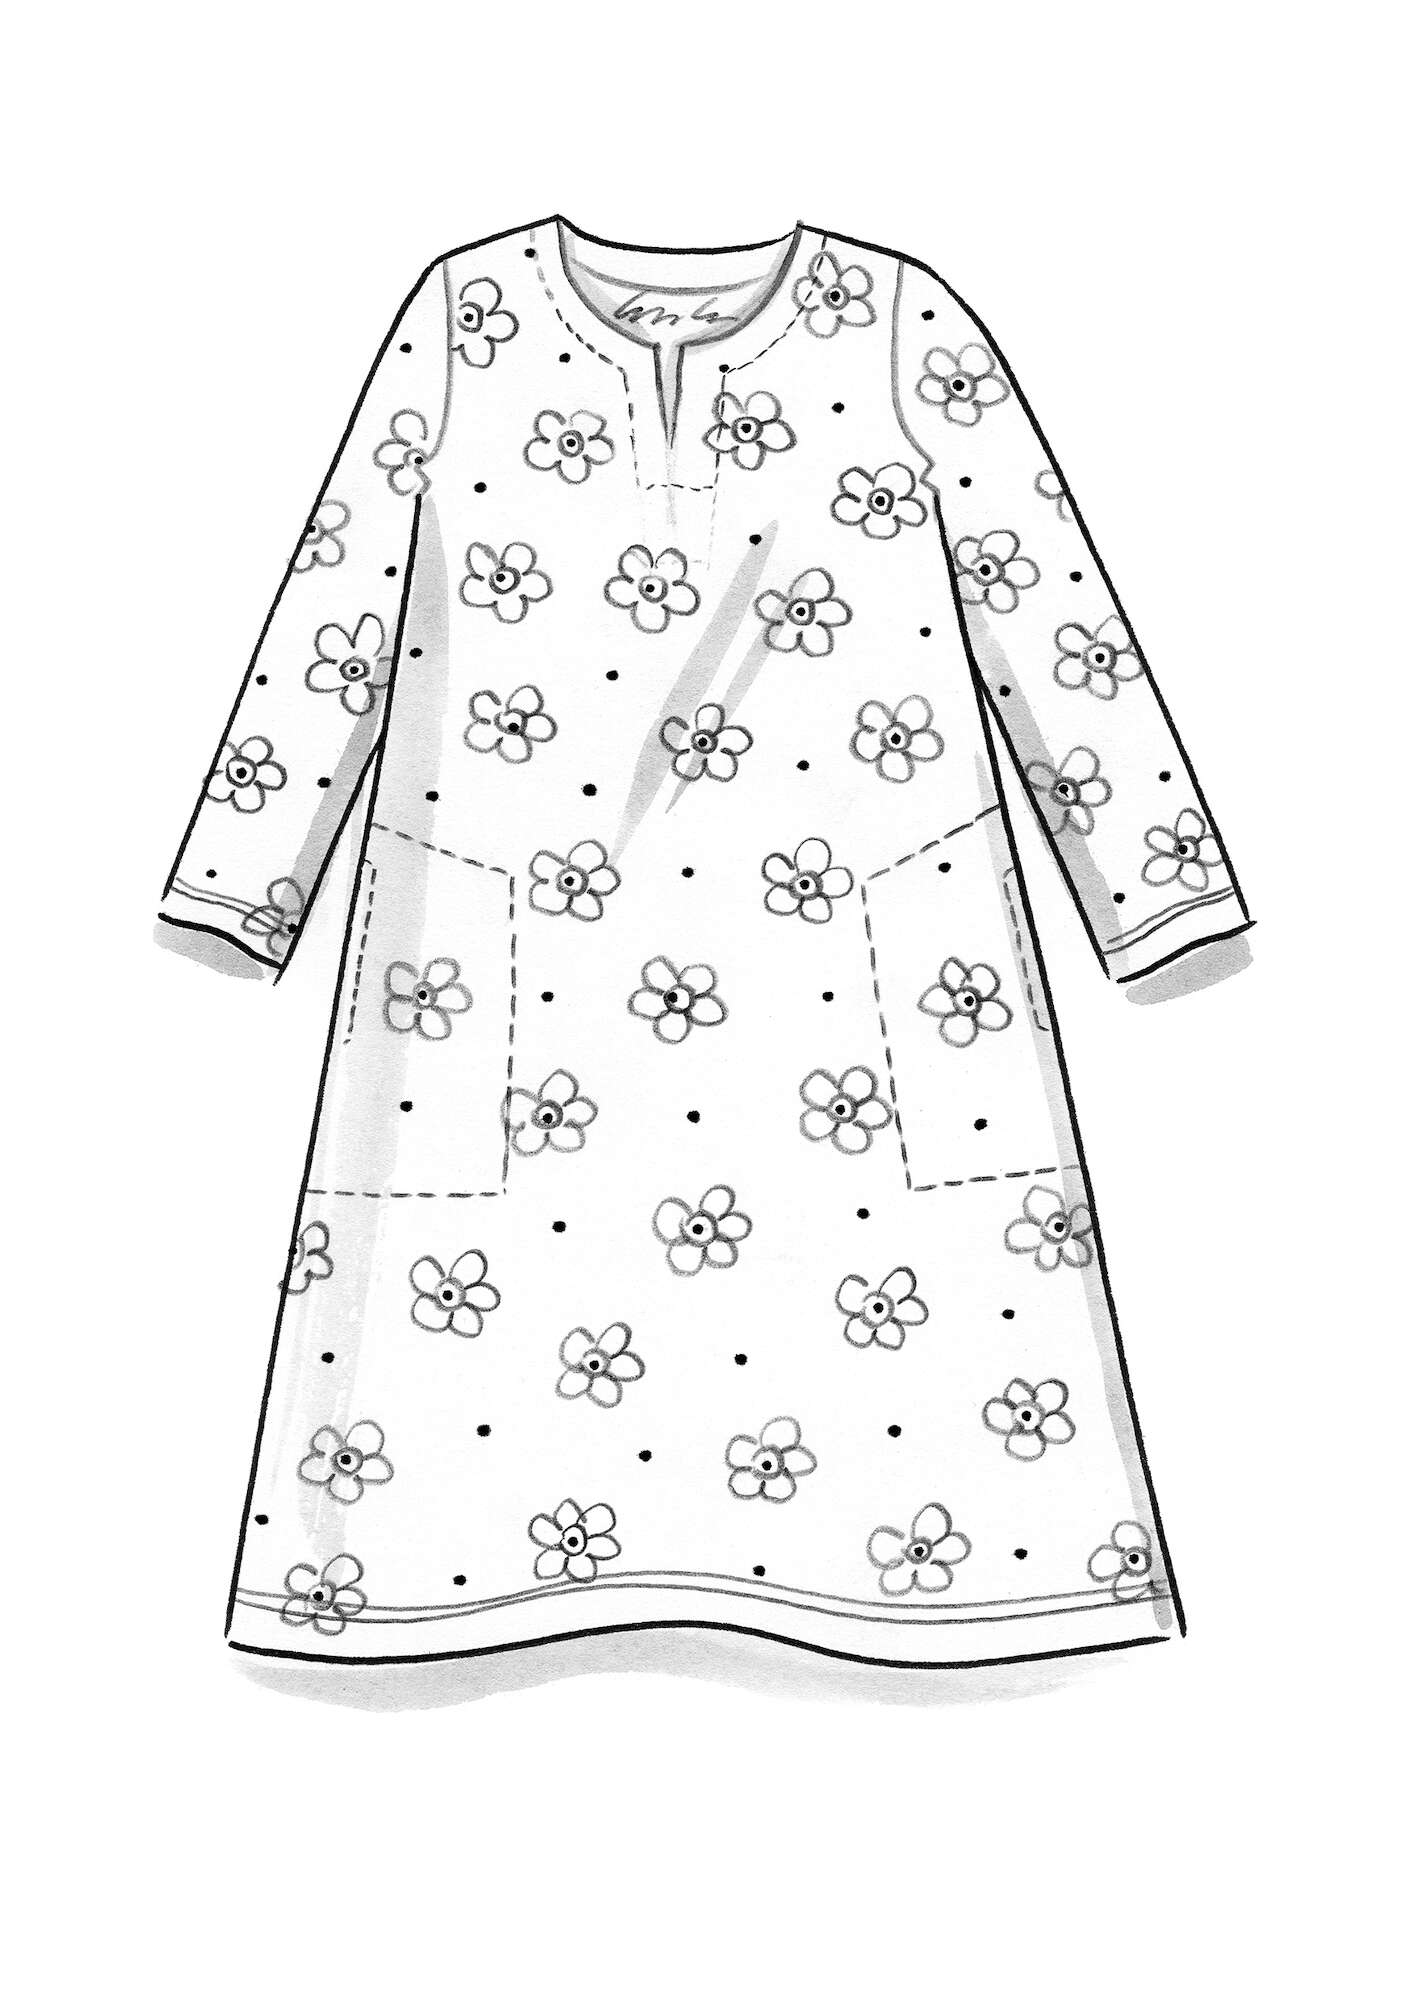 Trikåklänning  Belle  i ekologisk bomull/elastan agatröd/mönstrad